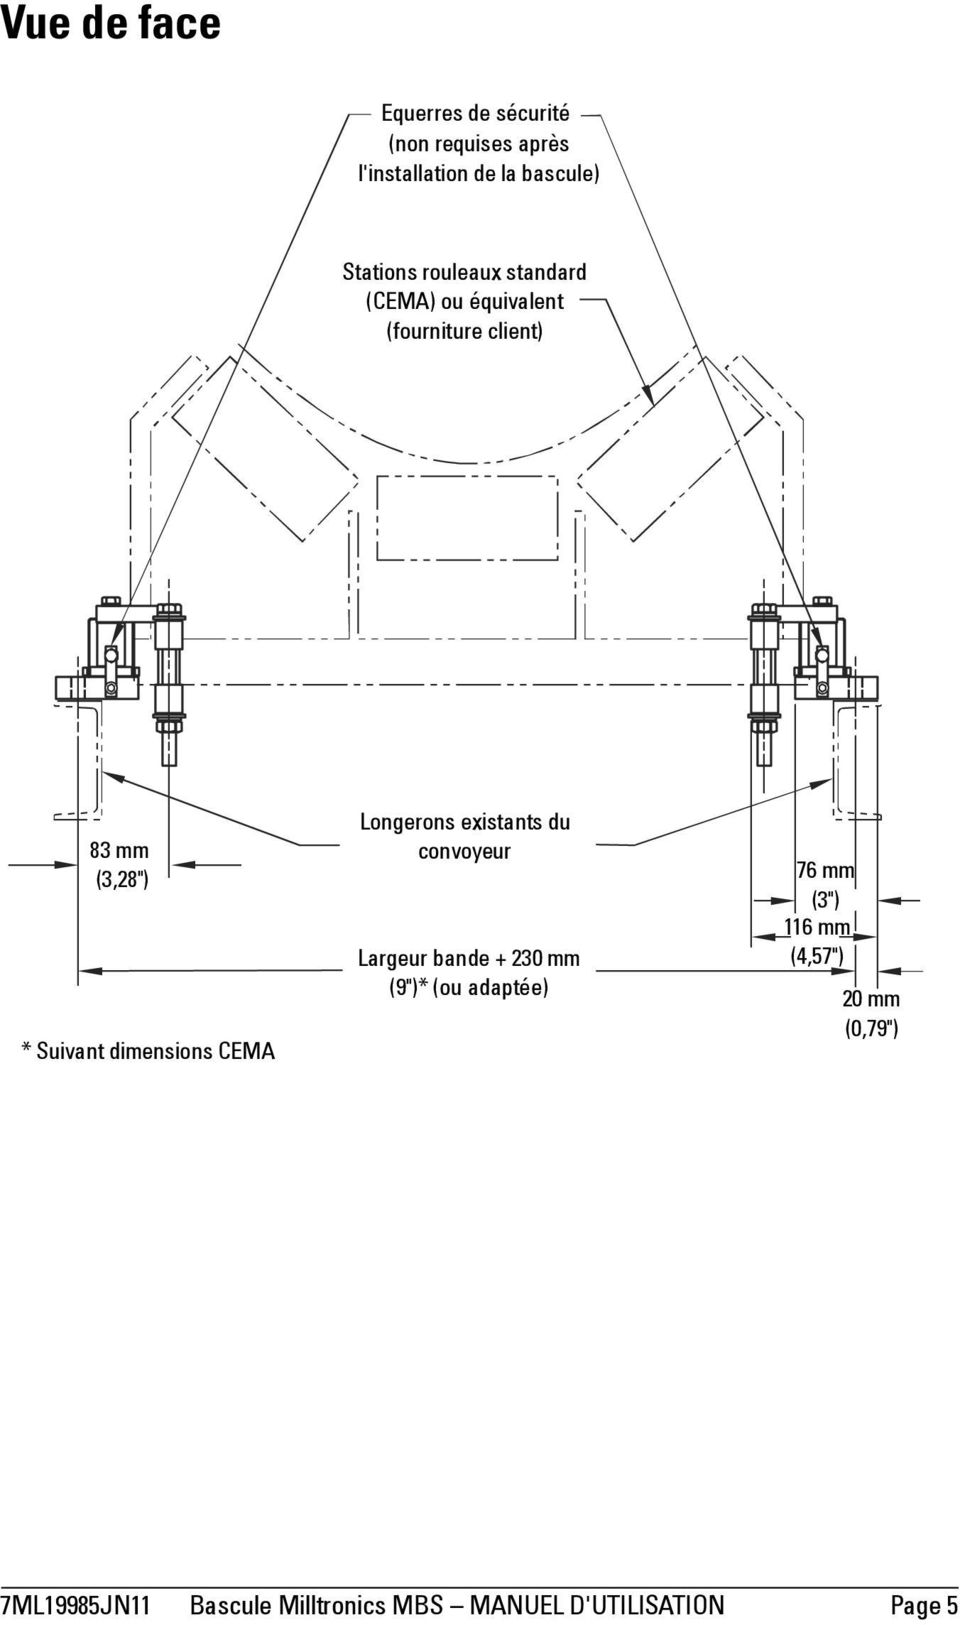 Suivant dimensions CEMA Longerons existants du convoyeur Largeur bande + 230 mm (9")* (ou adaptée)